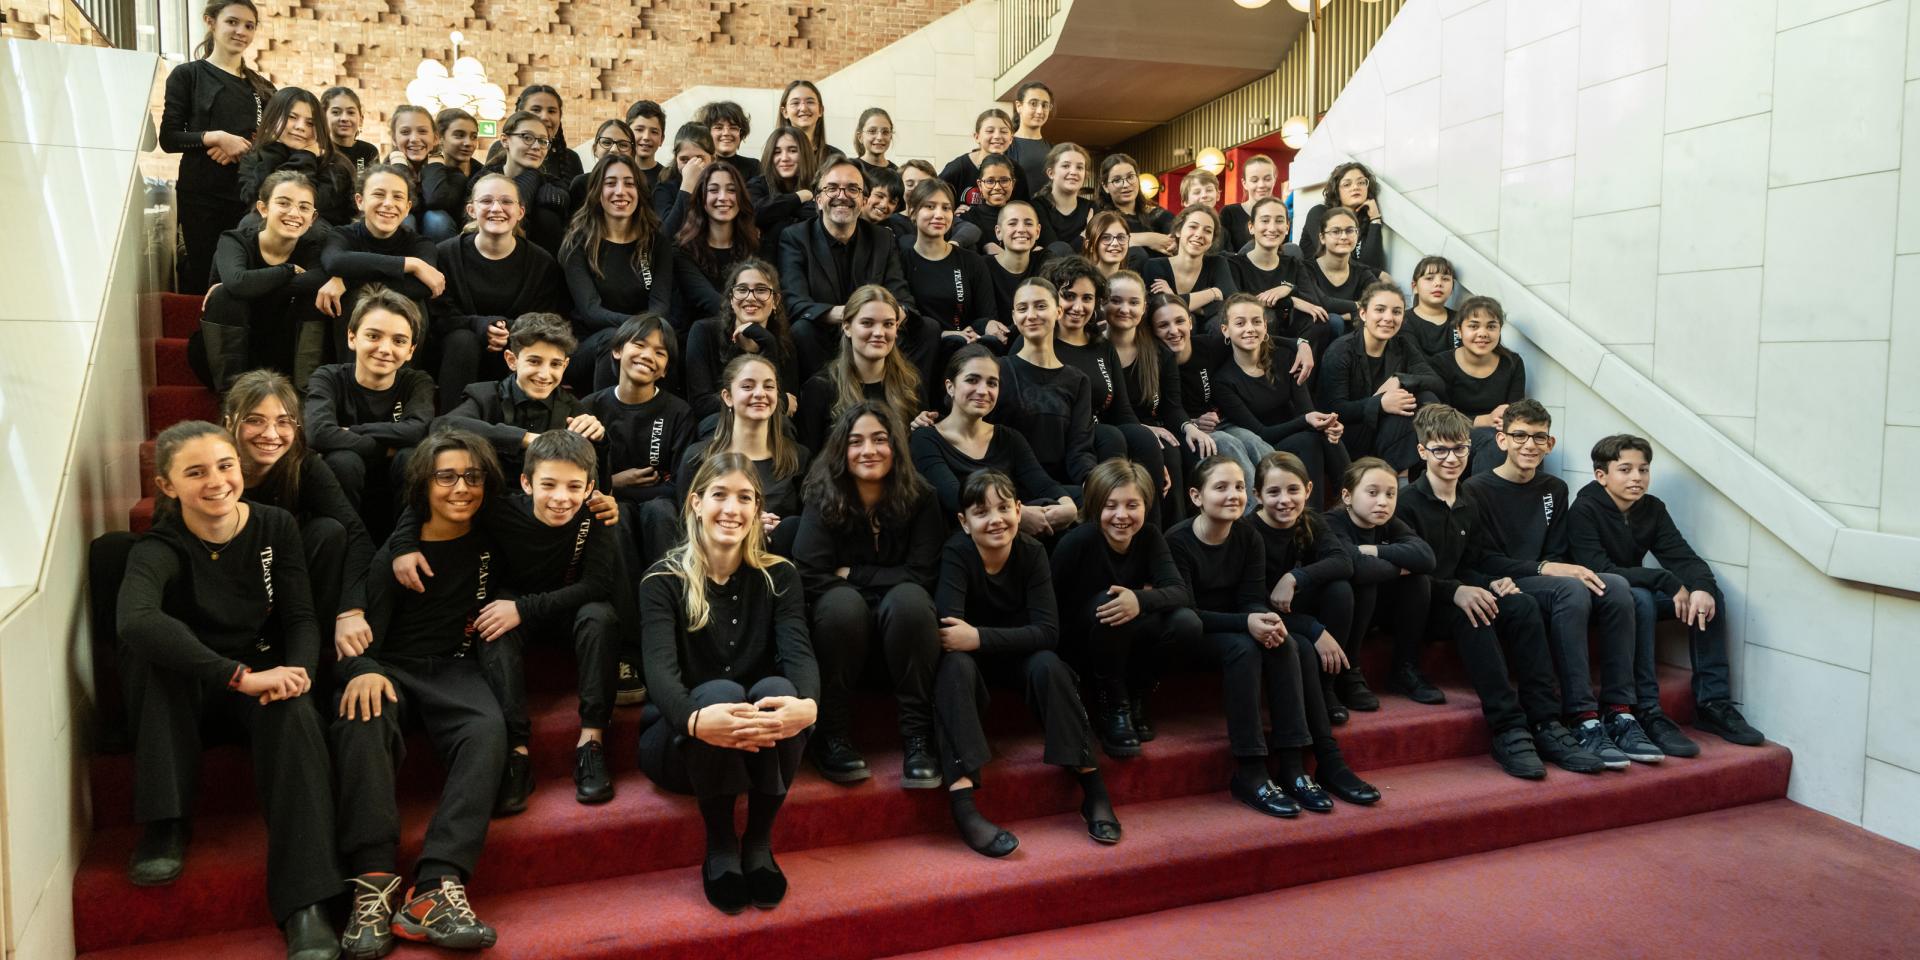 Coro di voci bianche Teatro Regio Torino con al centro il maestro Claudio Fenoglio